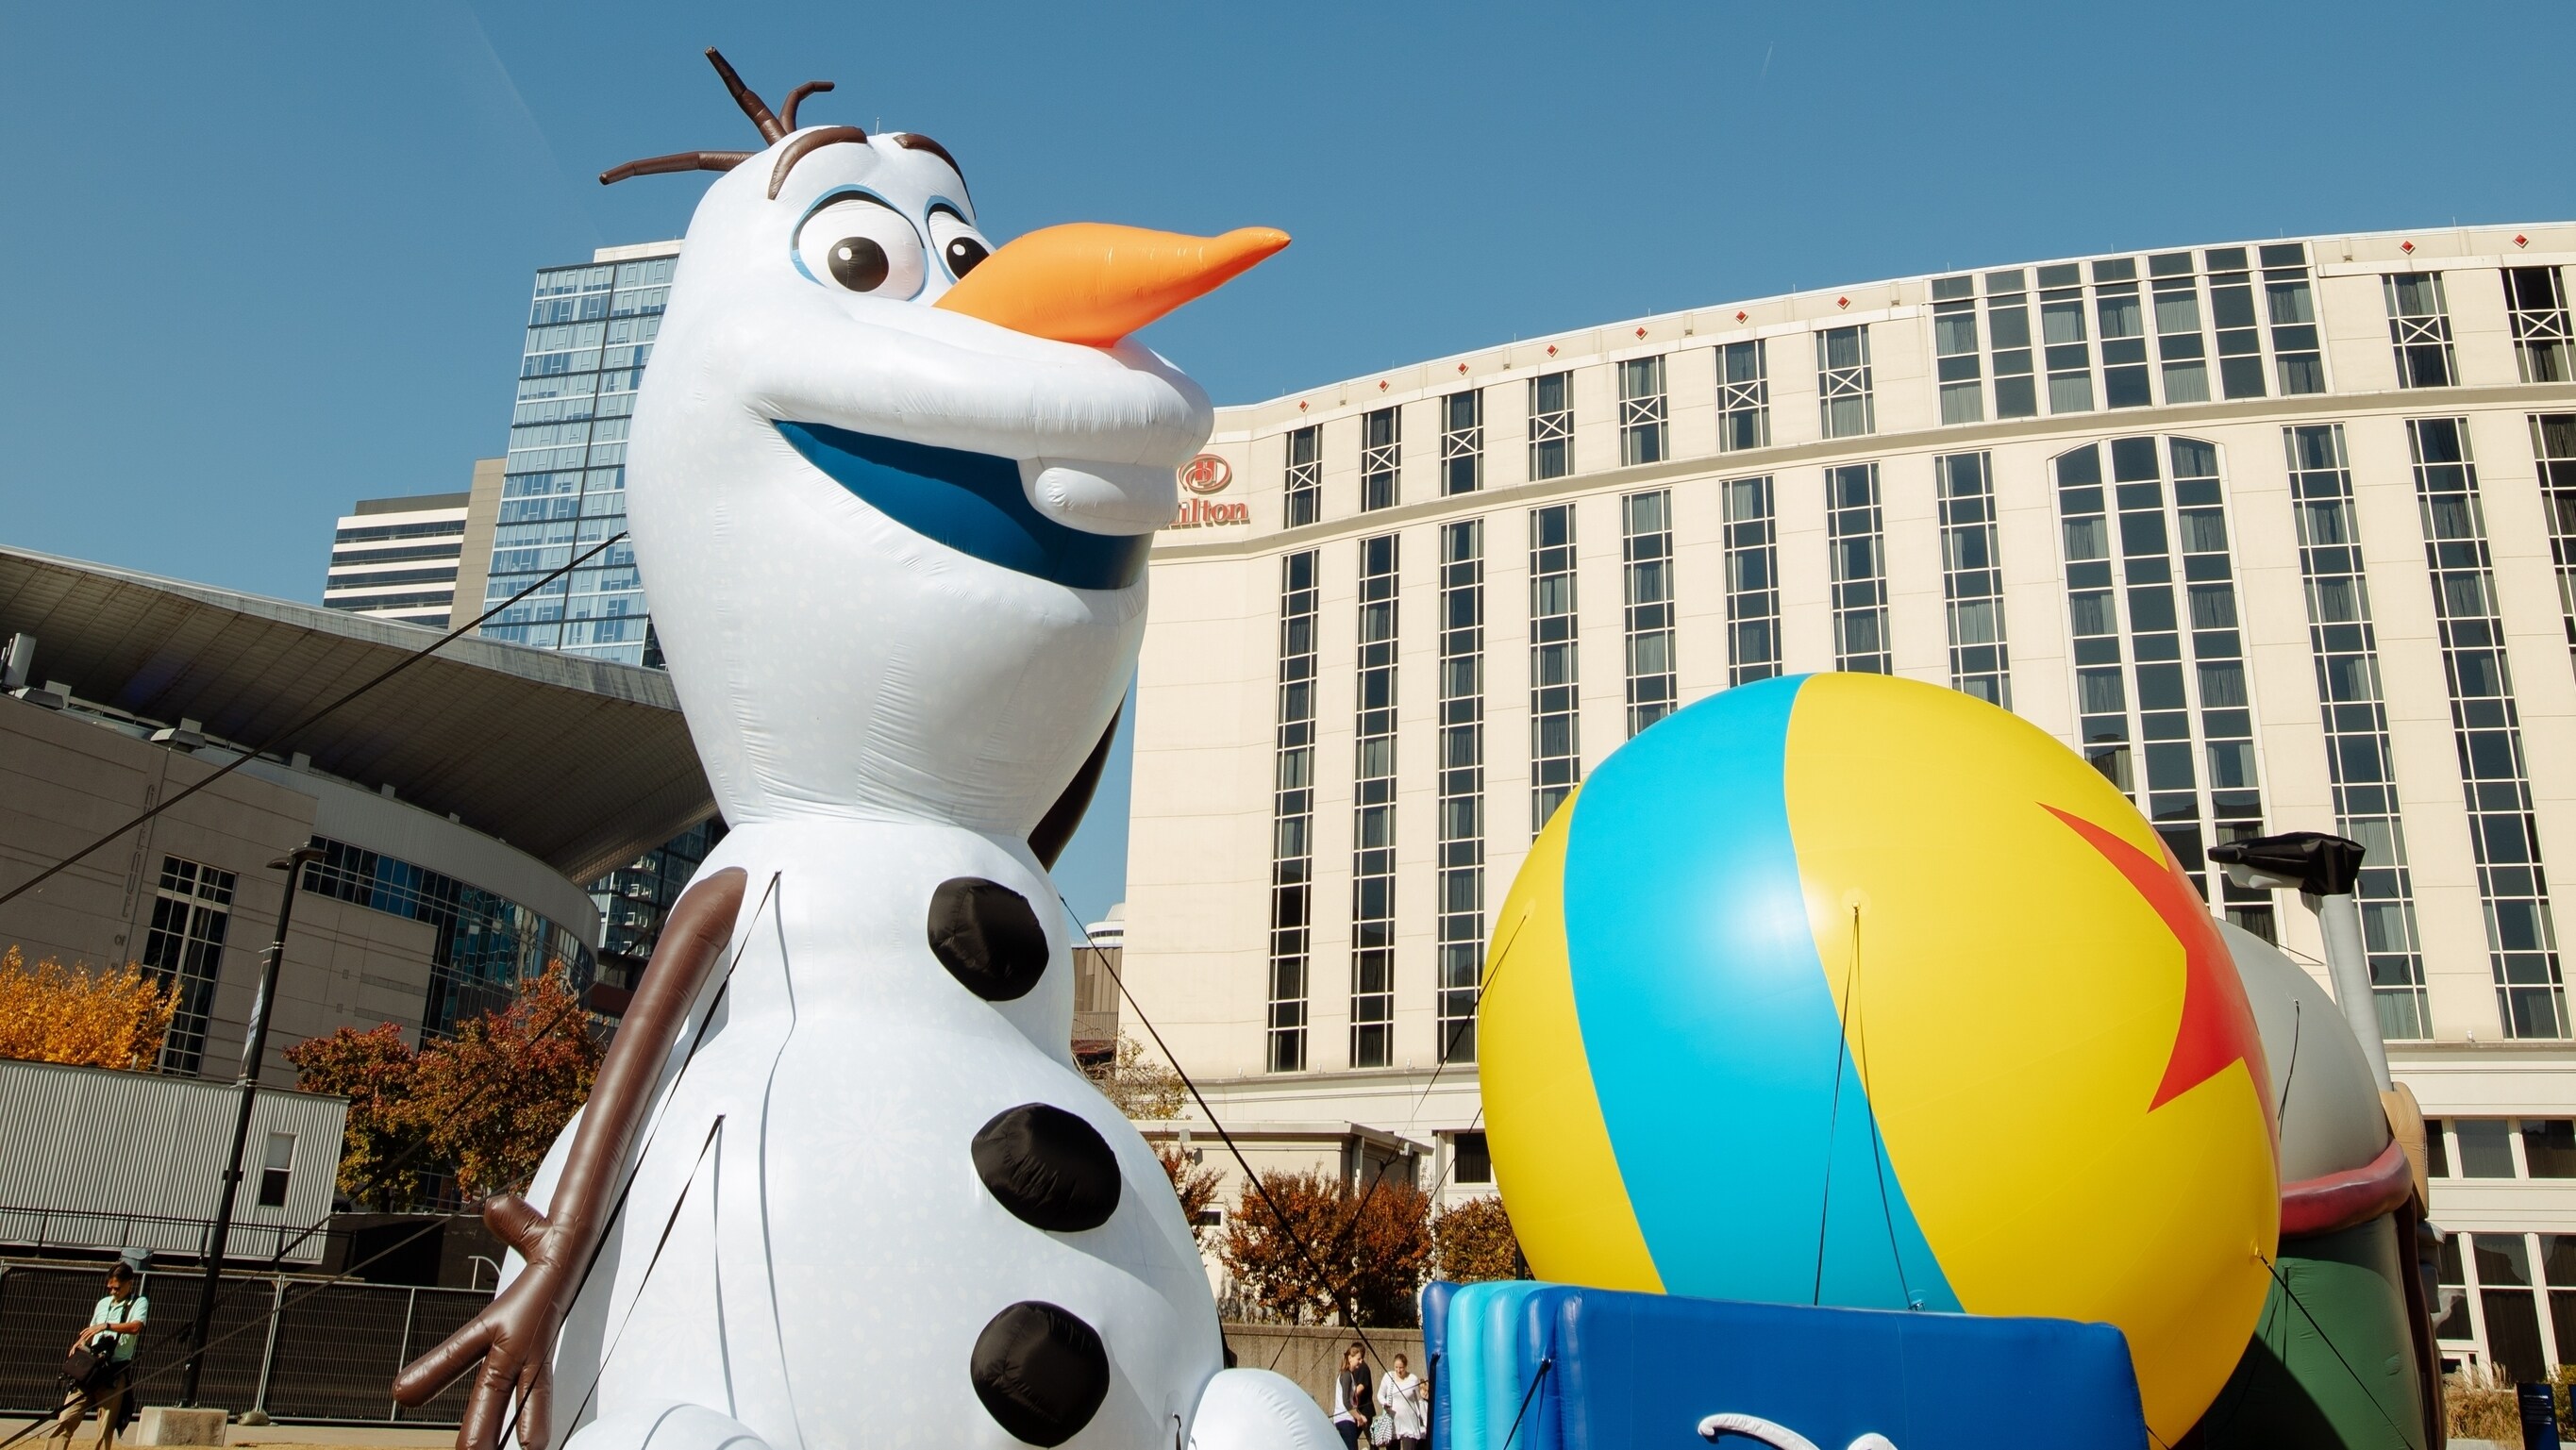 Disney+ Day Inflatable Balloon Tour - Nashville